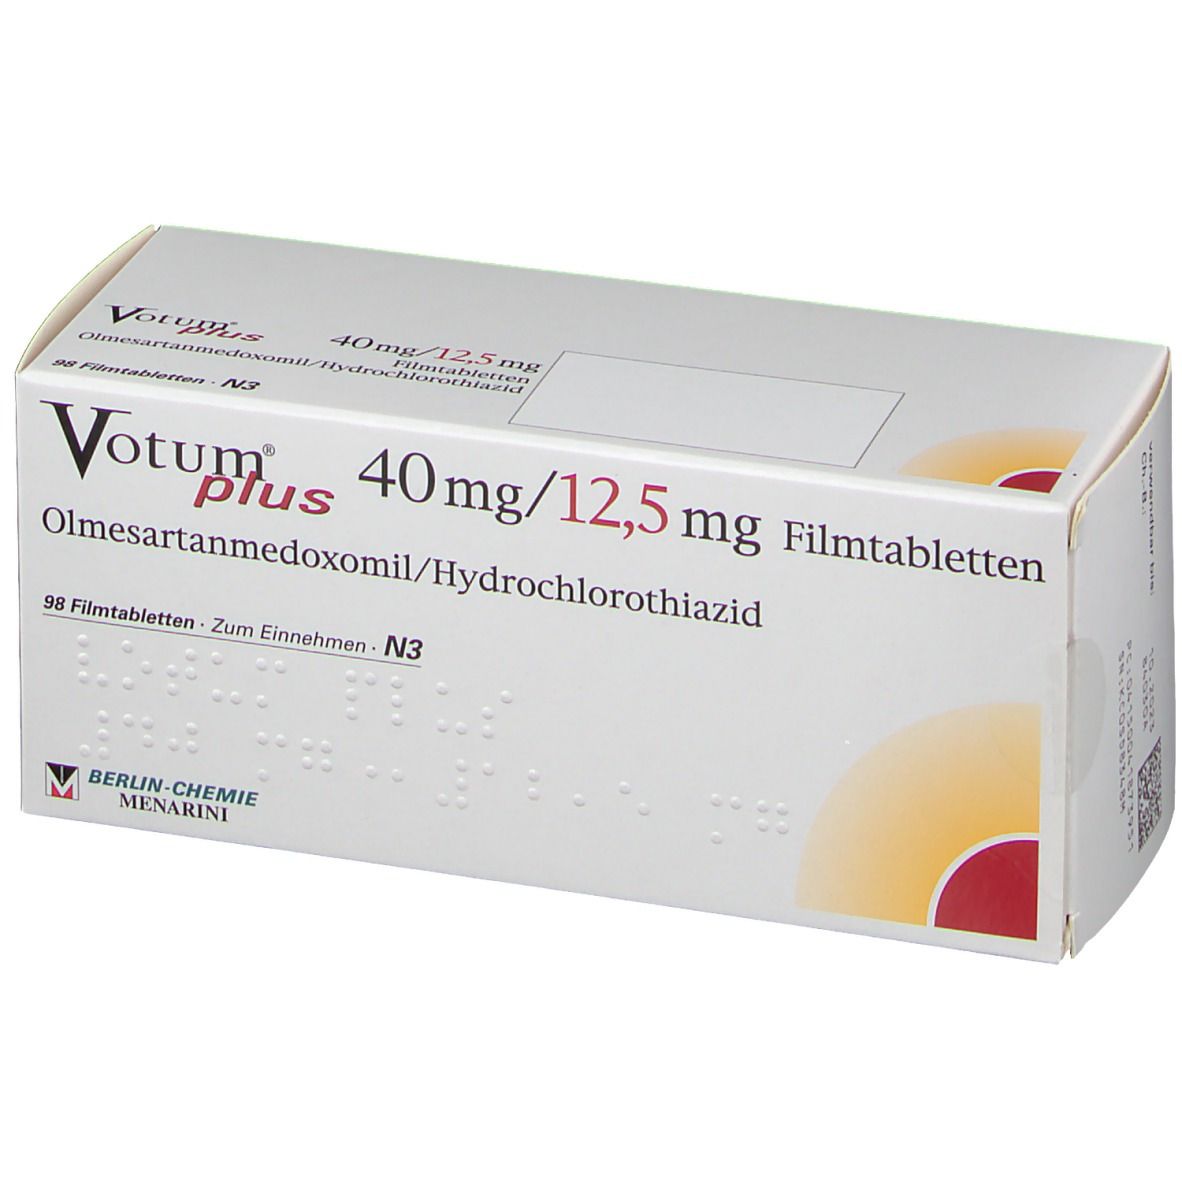 Votum® Plus 40 mg/12,5 mg